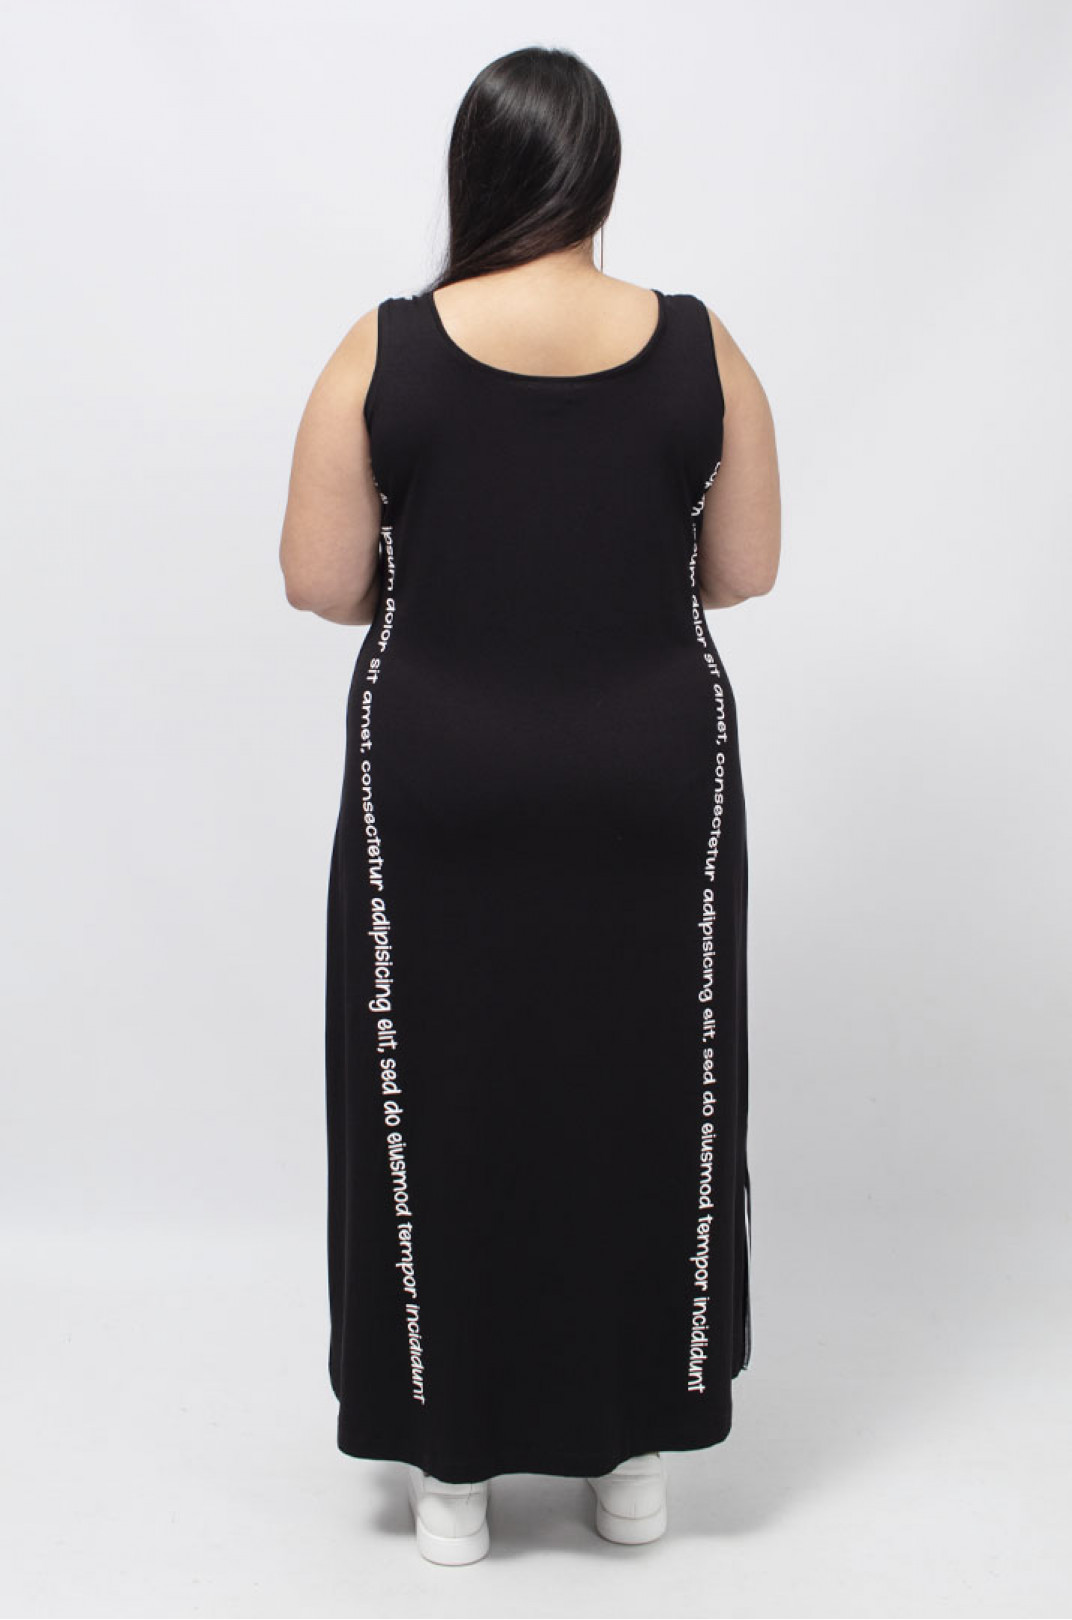 Сарафан-платье с вертикальными надписями, стразами и разрезами батал